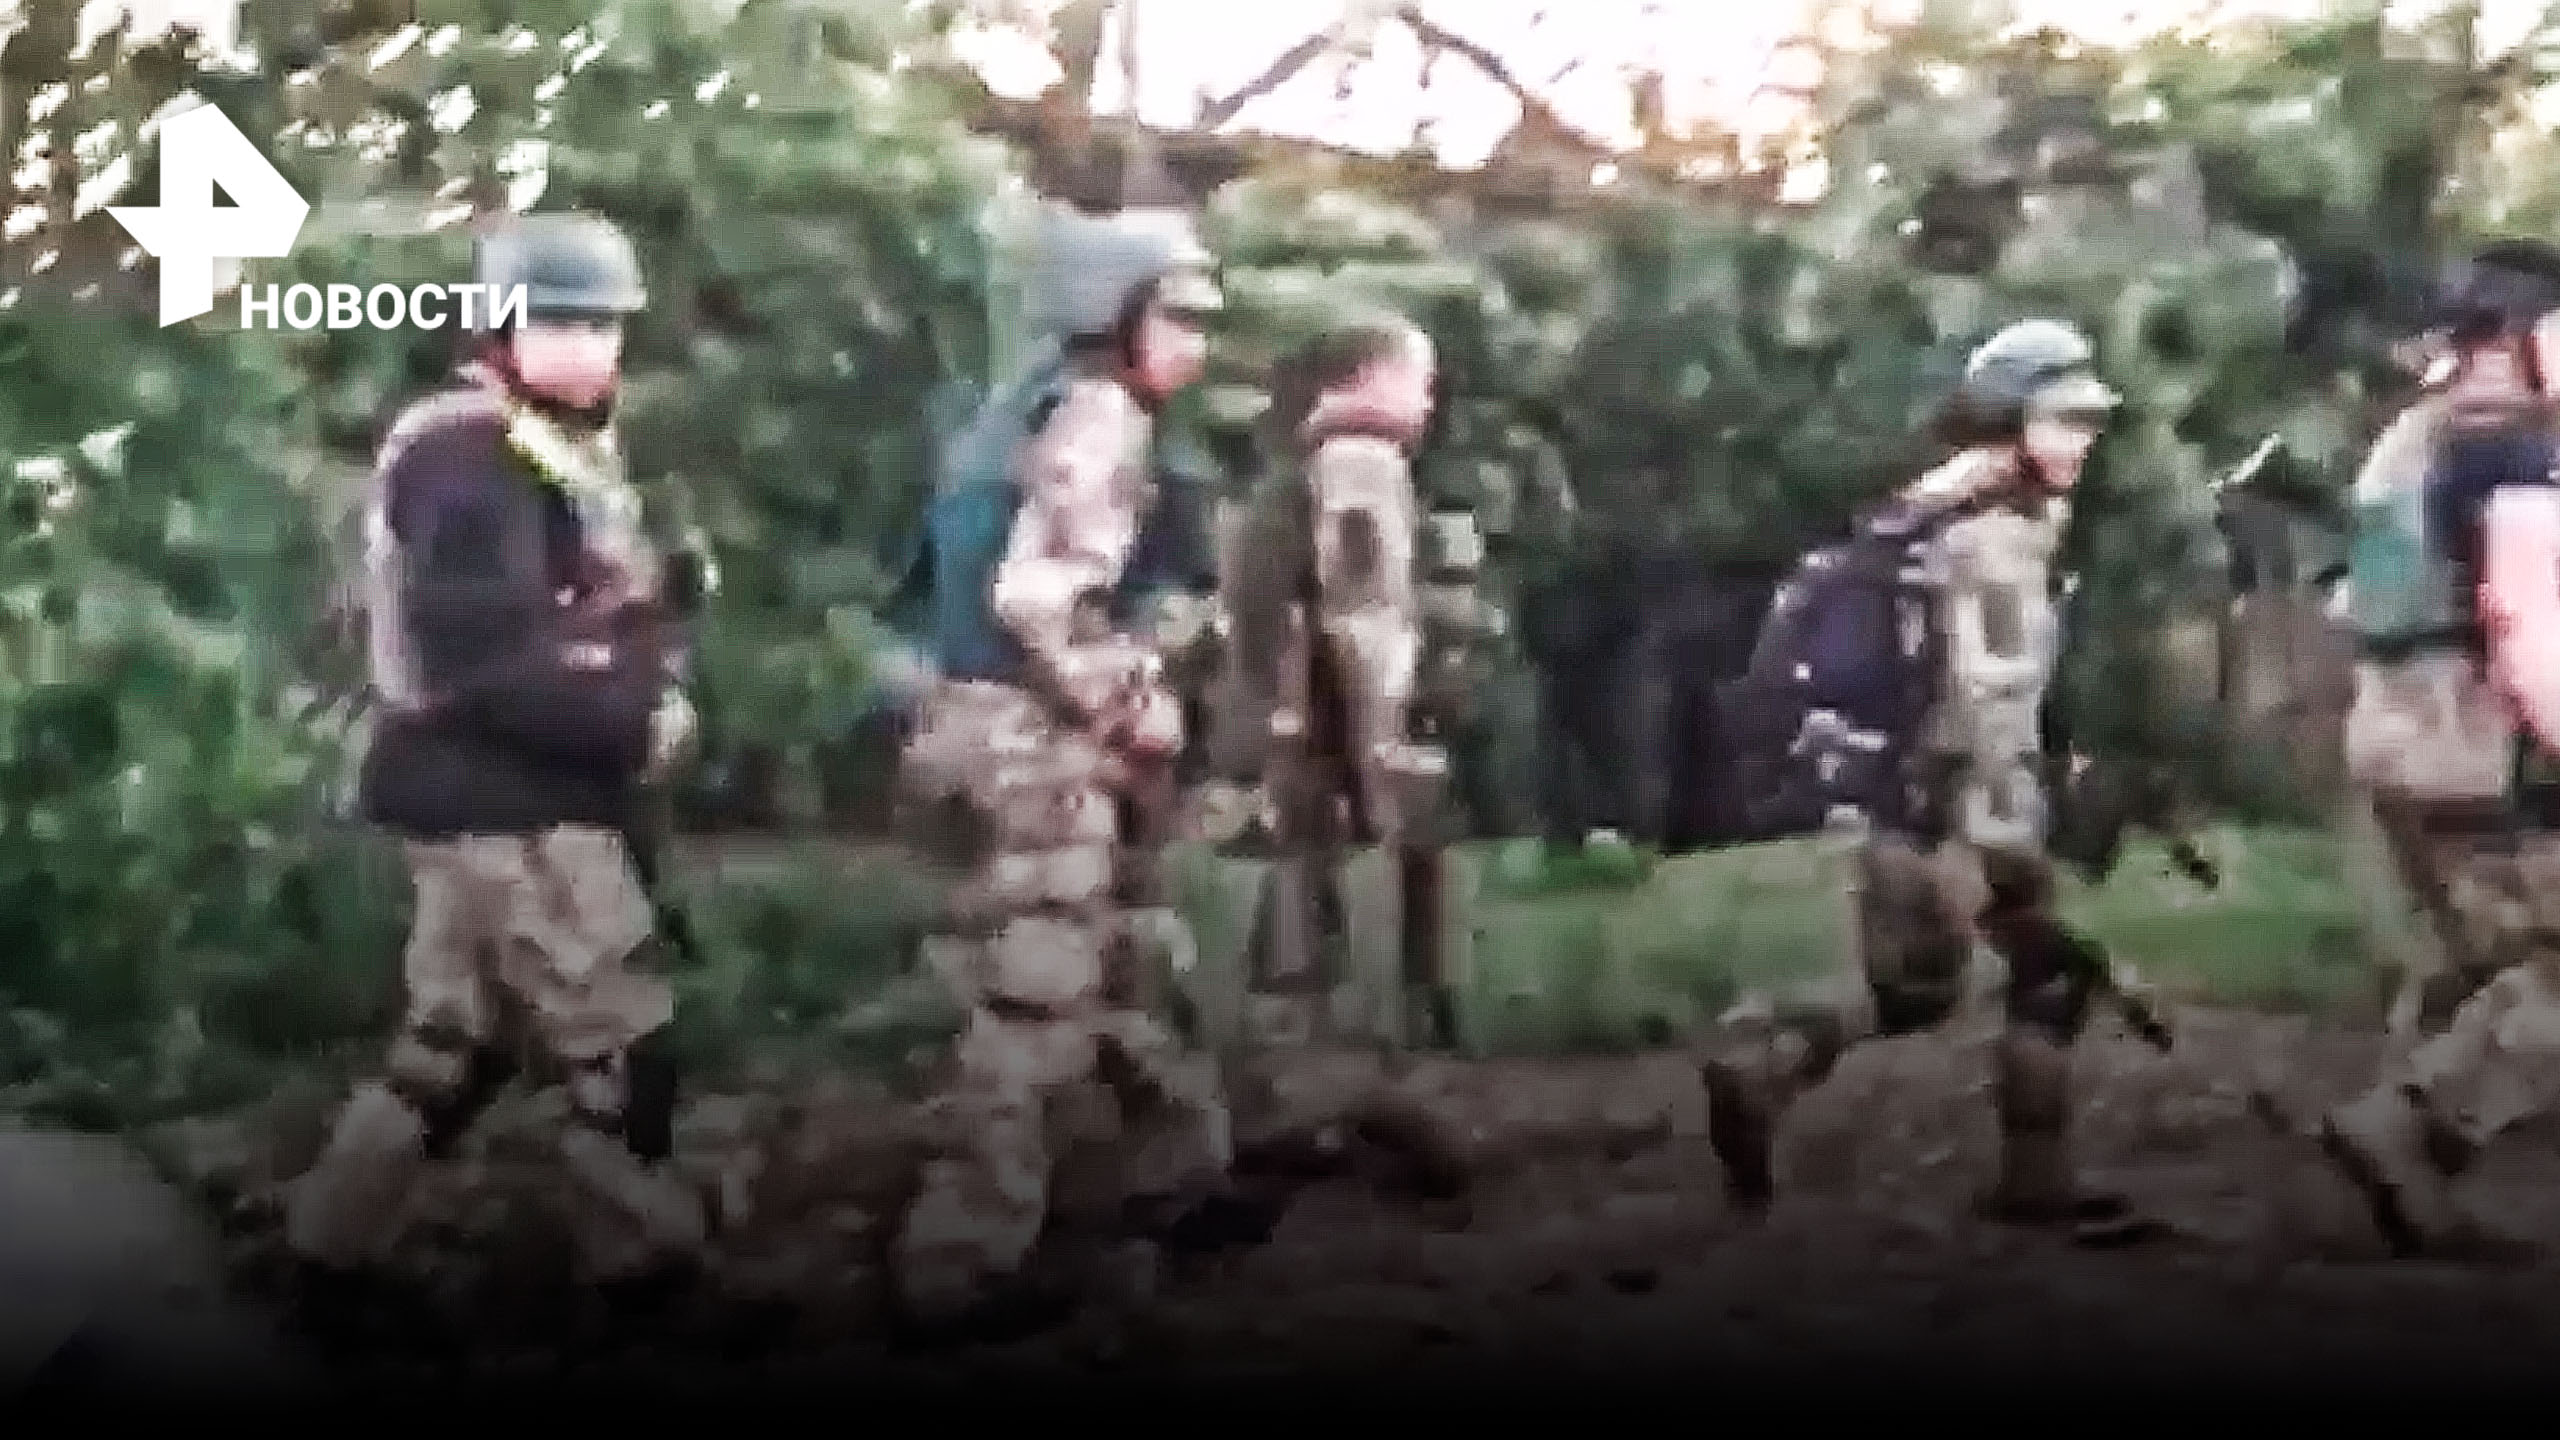 ВИДЕО: Украинские боевики в панике бегут от российских солдат / РЕН Новости